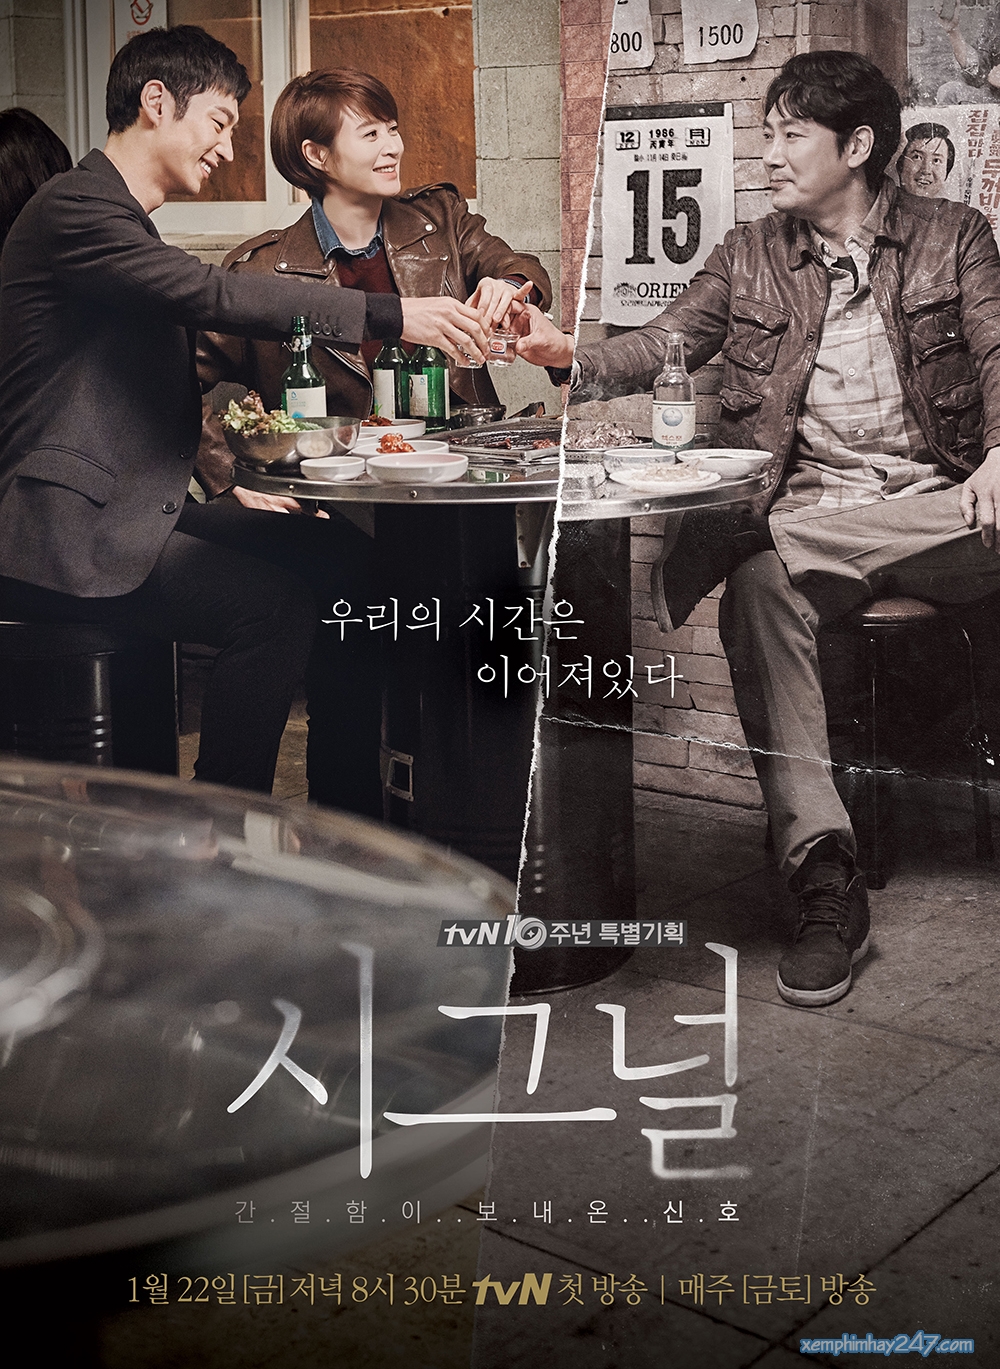 Phim của Kim Hye Soo: Tín hiệu - Signal (2016)